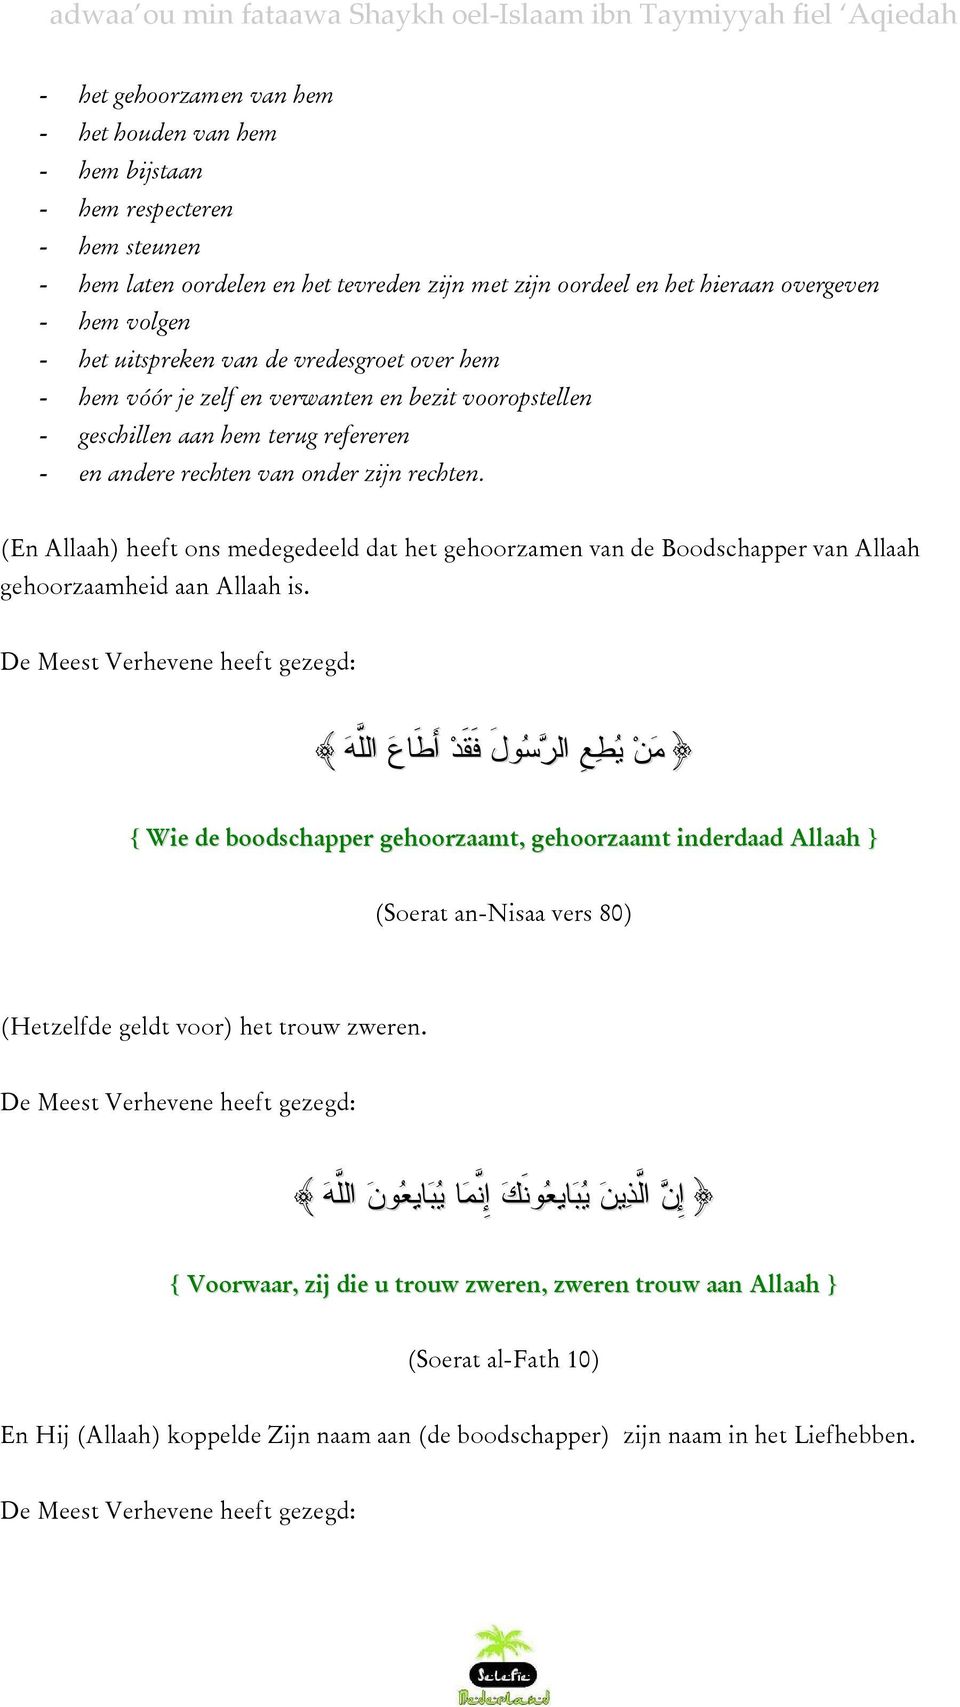 (En Allaah) heeft ons medegedeeld dat het gehoorzamen van de Boodschapper van Allaah gehoorzaamheid aan Allaah is.